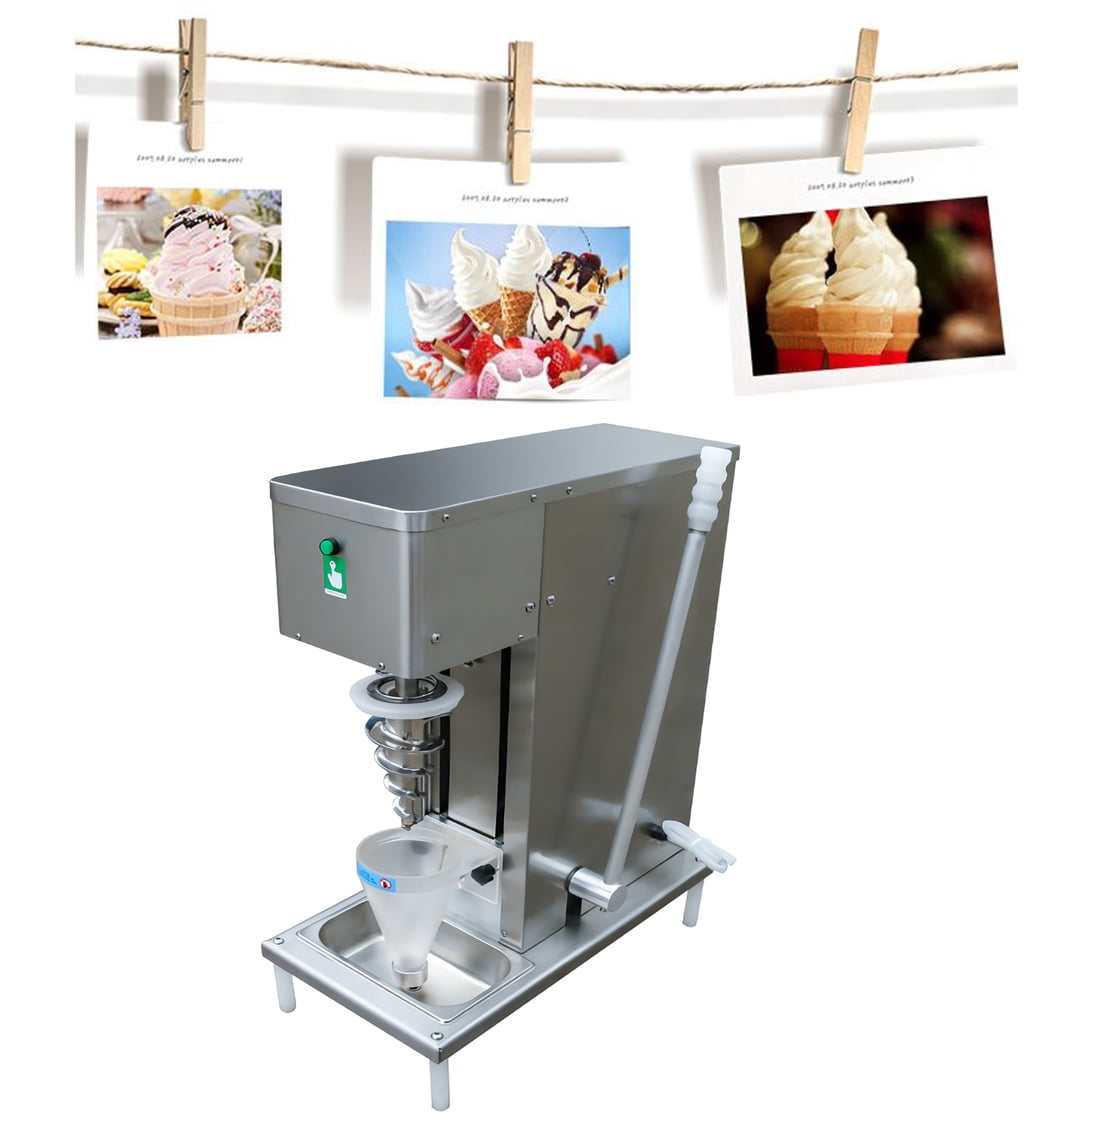 Details about   350w Commercial Ice Cream Mixer Milkshake Maker Blender Frozen Dessert Machine 